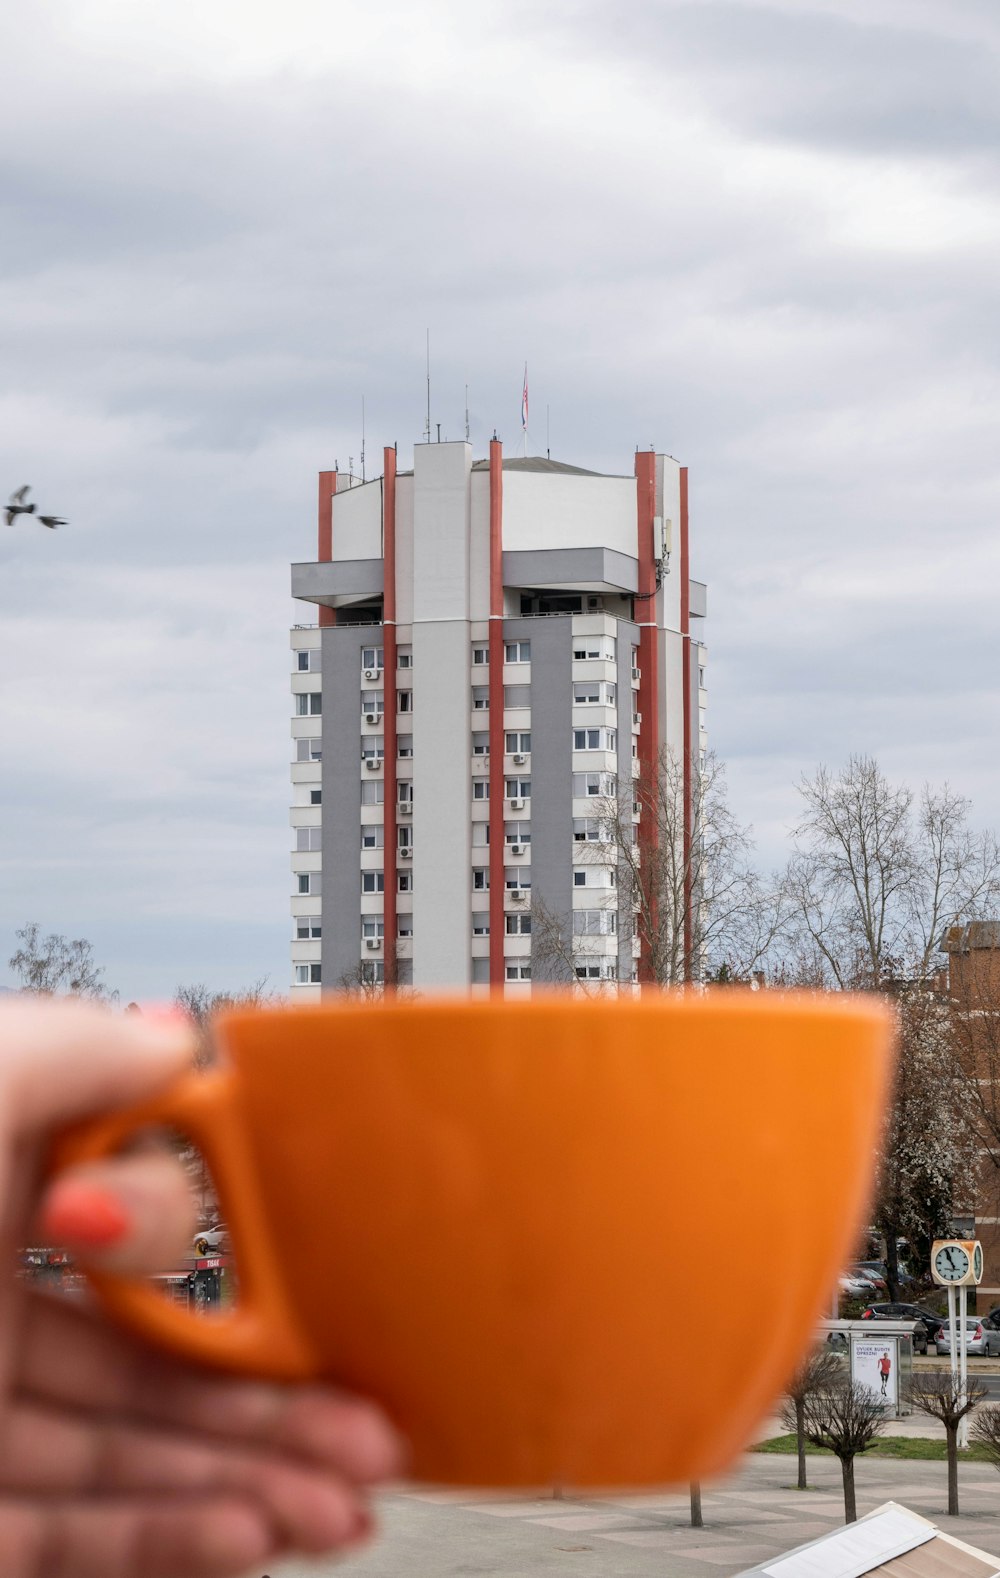 une personne tenant une tasse orange devant un grand immeuble